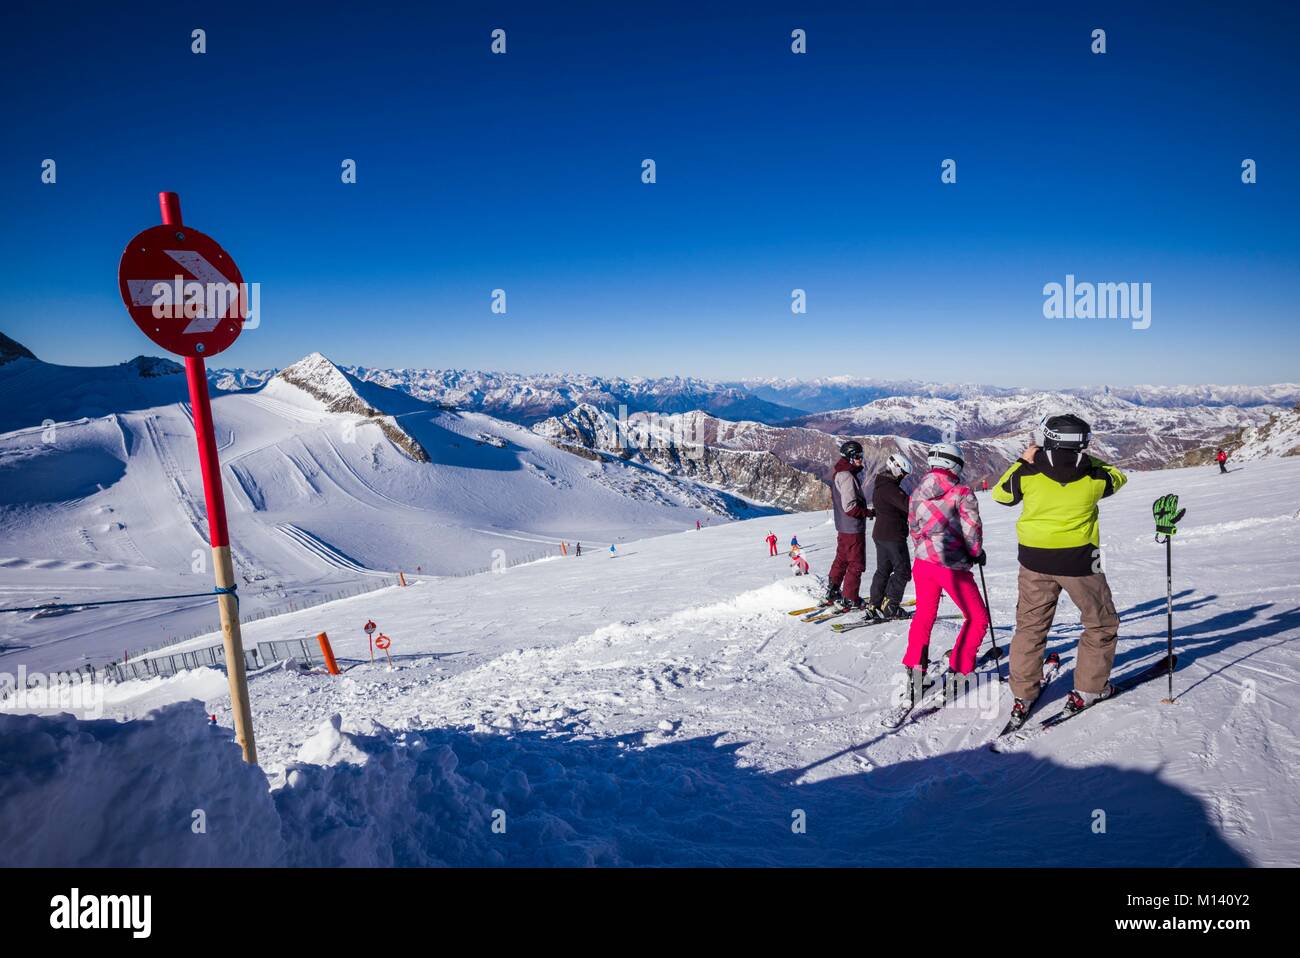 Austria, Tirolo, Zillertal, Hintertux, sul ghiacciaio Hintertuxer Gletscher, gli sciatori al vertice, 3250 metri, inverno Foto Stock